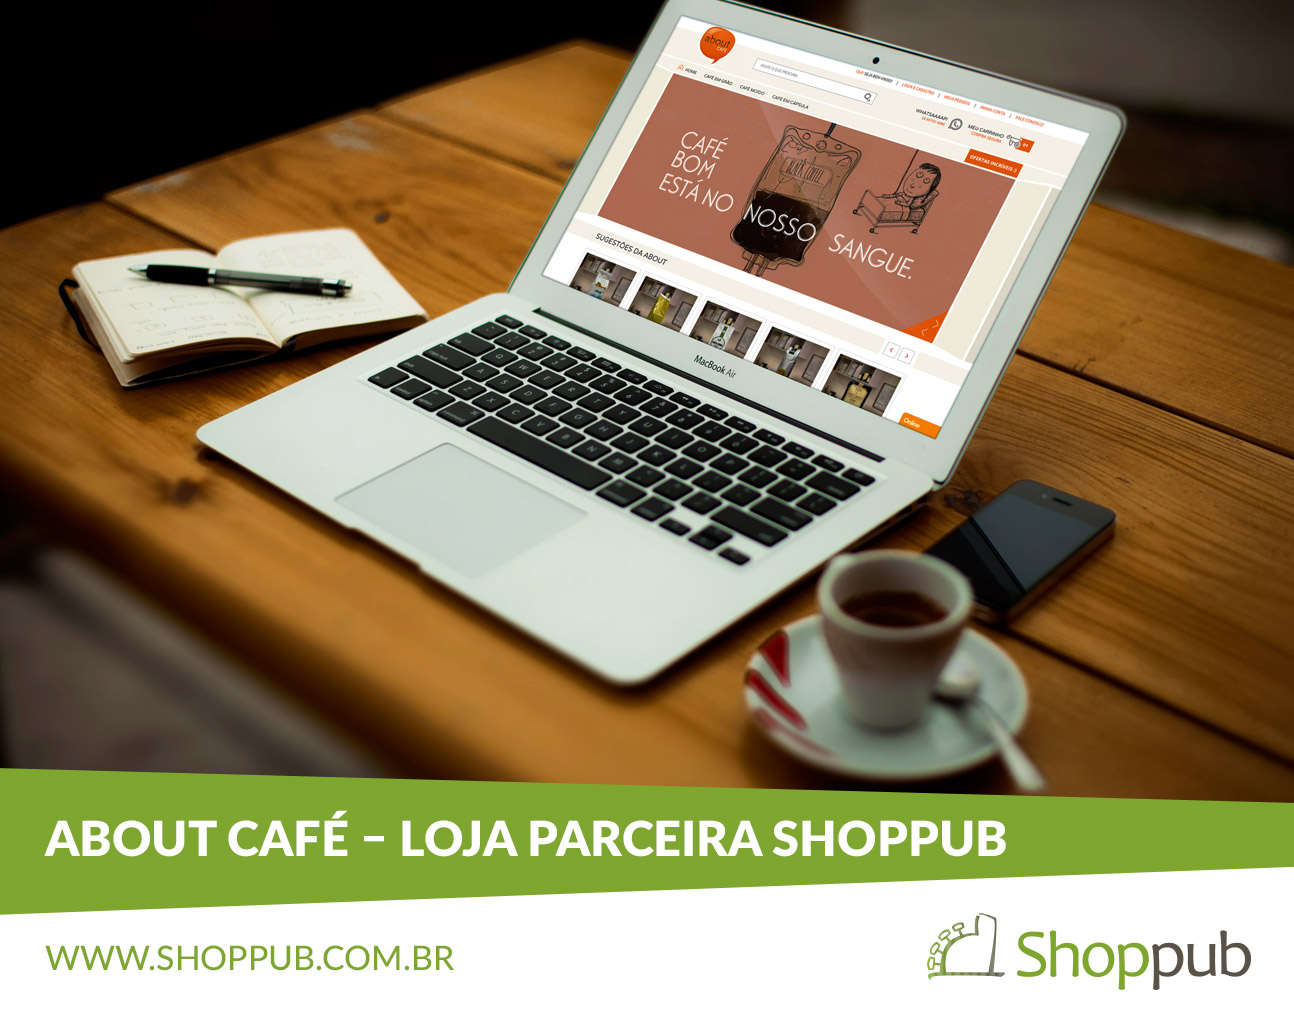 About Café – Loja Parceira Shoppub